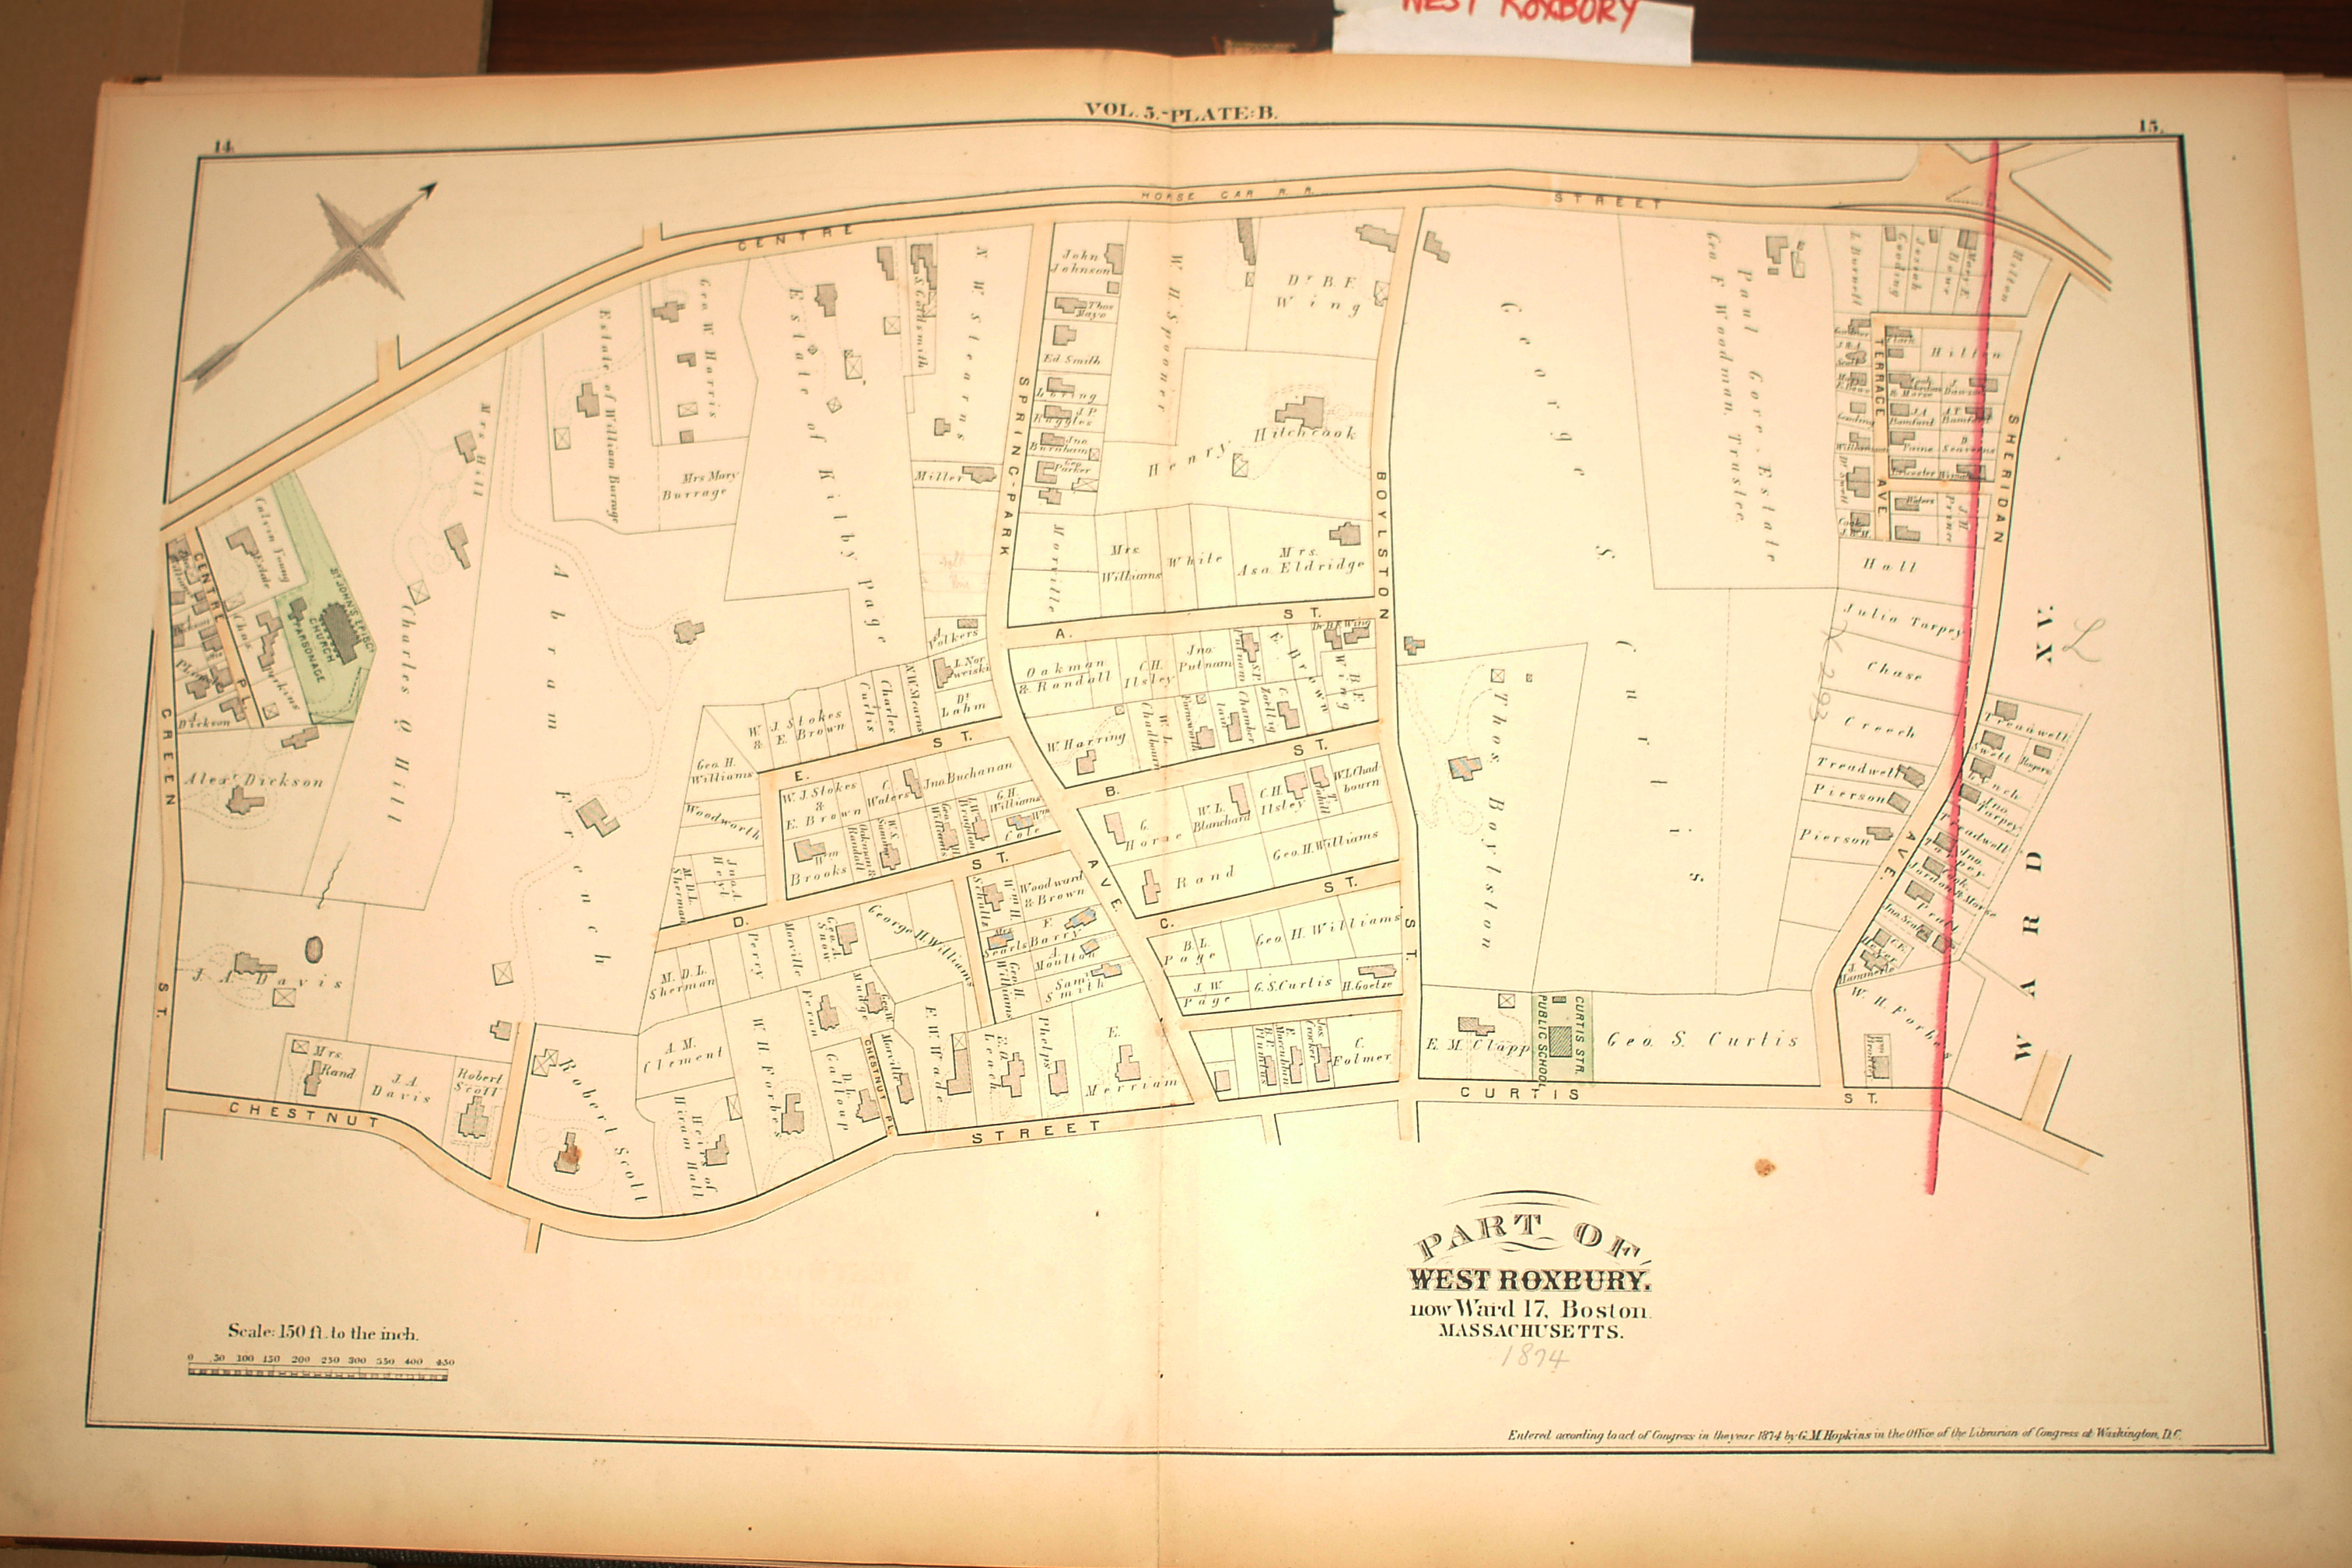 JAMAICA PLAIN SCHOOL COPY ATLAS MAP BOSTON 1896 W ROXBURY MA CHESTNUT AVE 